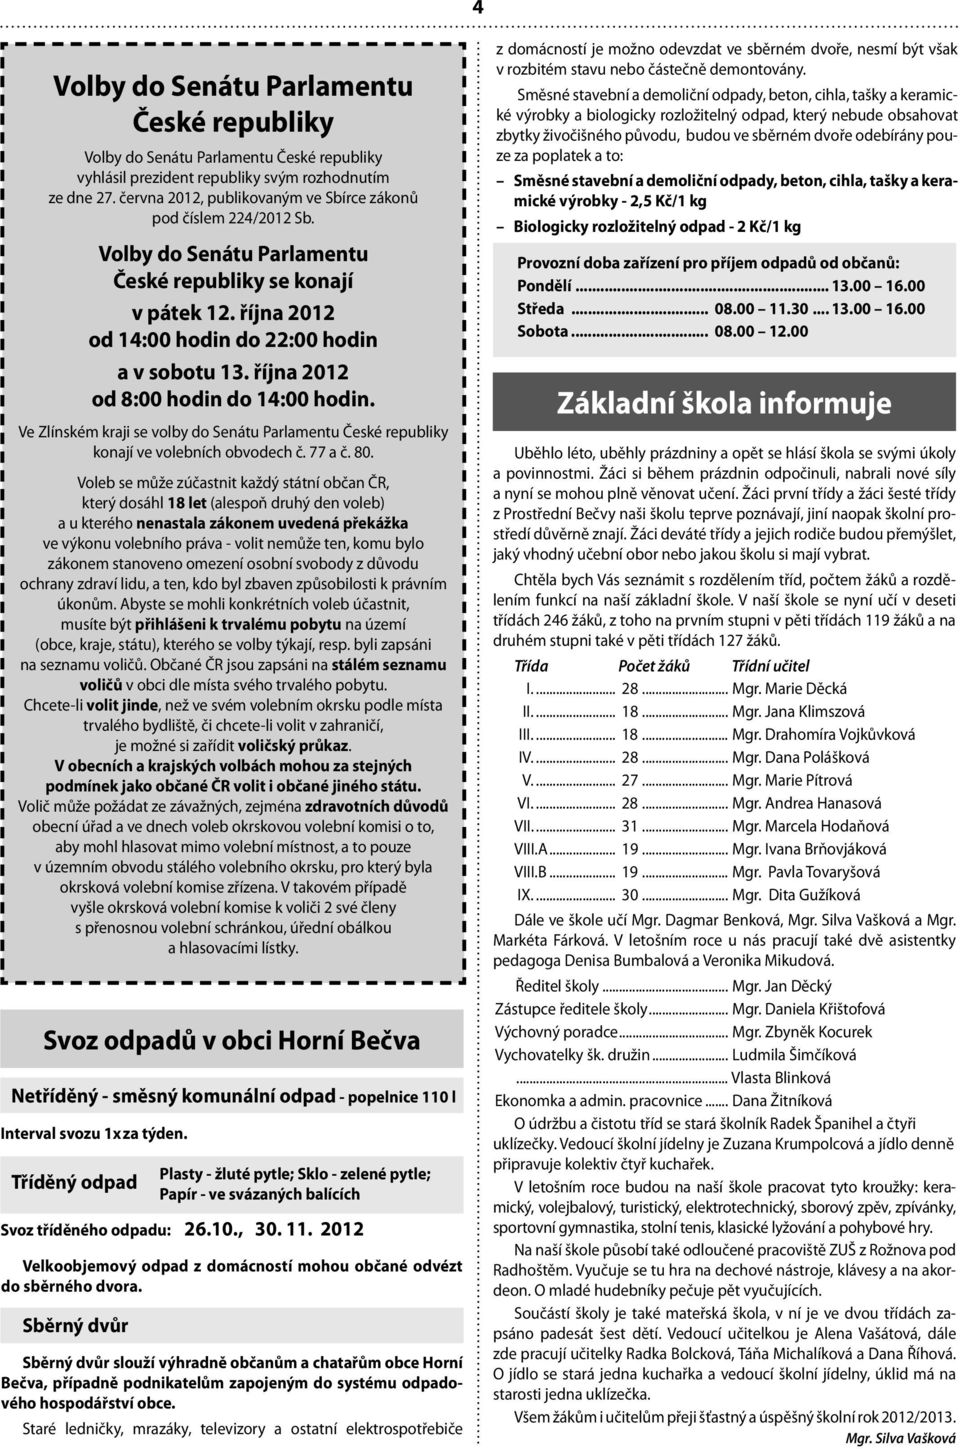 října 2012 od 8:00 hodin do 14:00 hodin. Ve Zlínském kraji se volby do Senátu Parlamentu České republiky konají ve volebních obvodech č. 77 a č. 80.